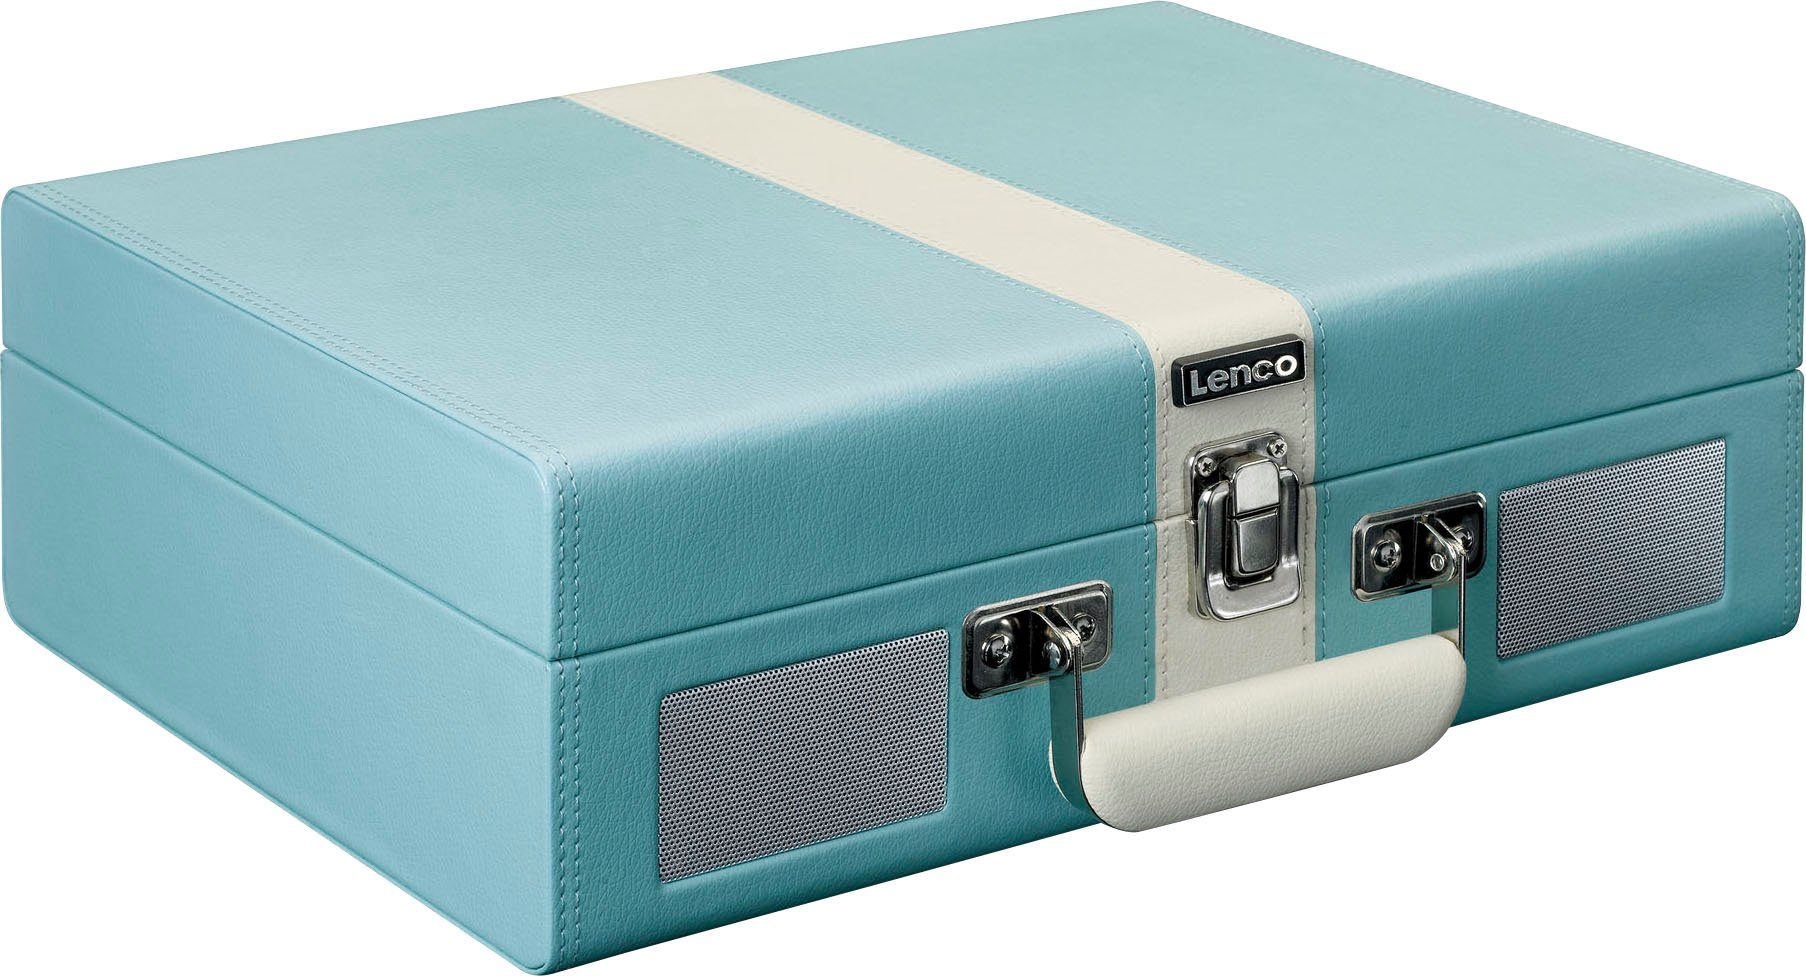 und mit BT Blau-Weiß eingebauten Lenco Plattenspieler (Riemenantrieb) Koffer-Plattenspieler Lsp.